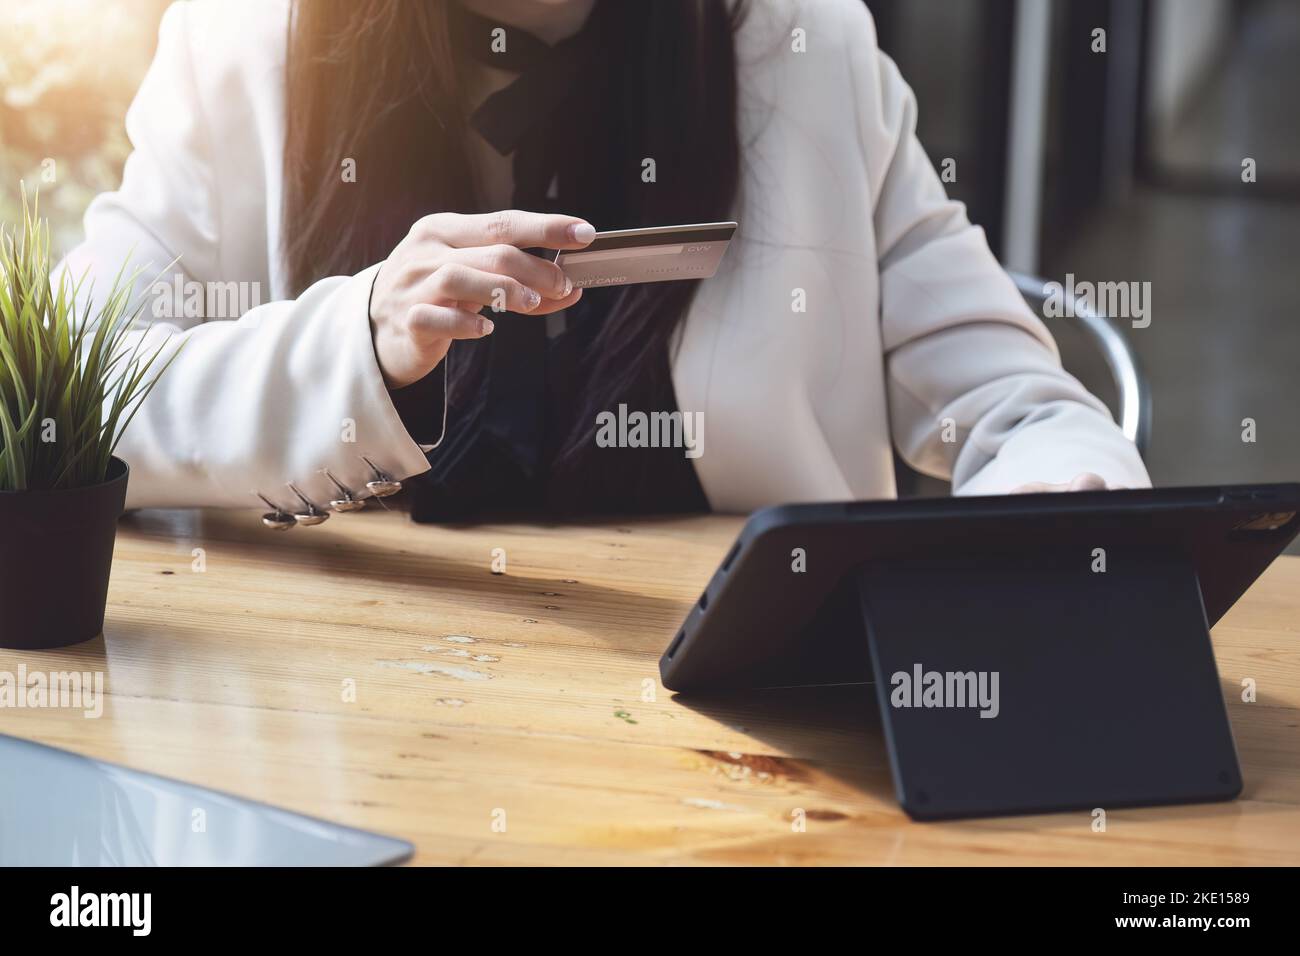 Asiatische junge Frau mit einem Tablet und Kreditkarte für Online-Shopping Stockfoto